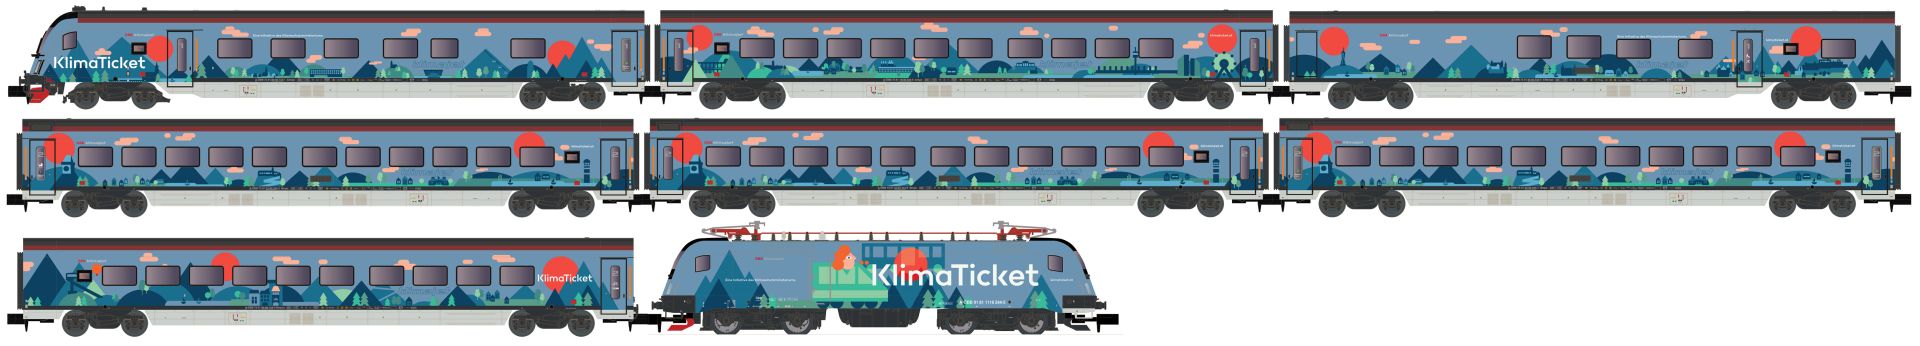 Hobbytrain H25226-S - 8er Set Personenzug mit Rh 1116 'Railjet-Klimaticket', ÖBB, Ep.VI, DC-Sound